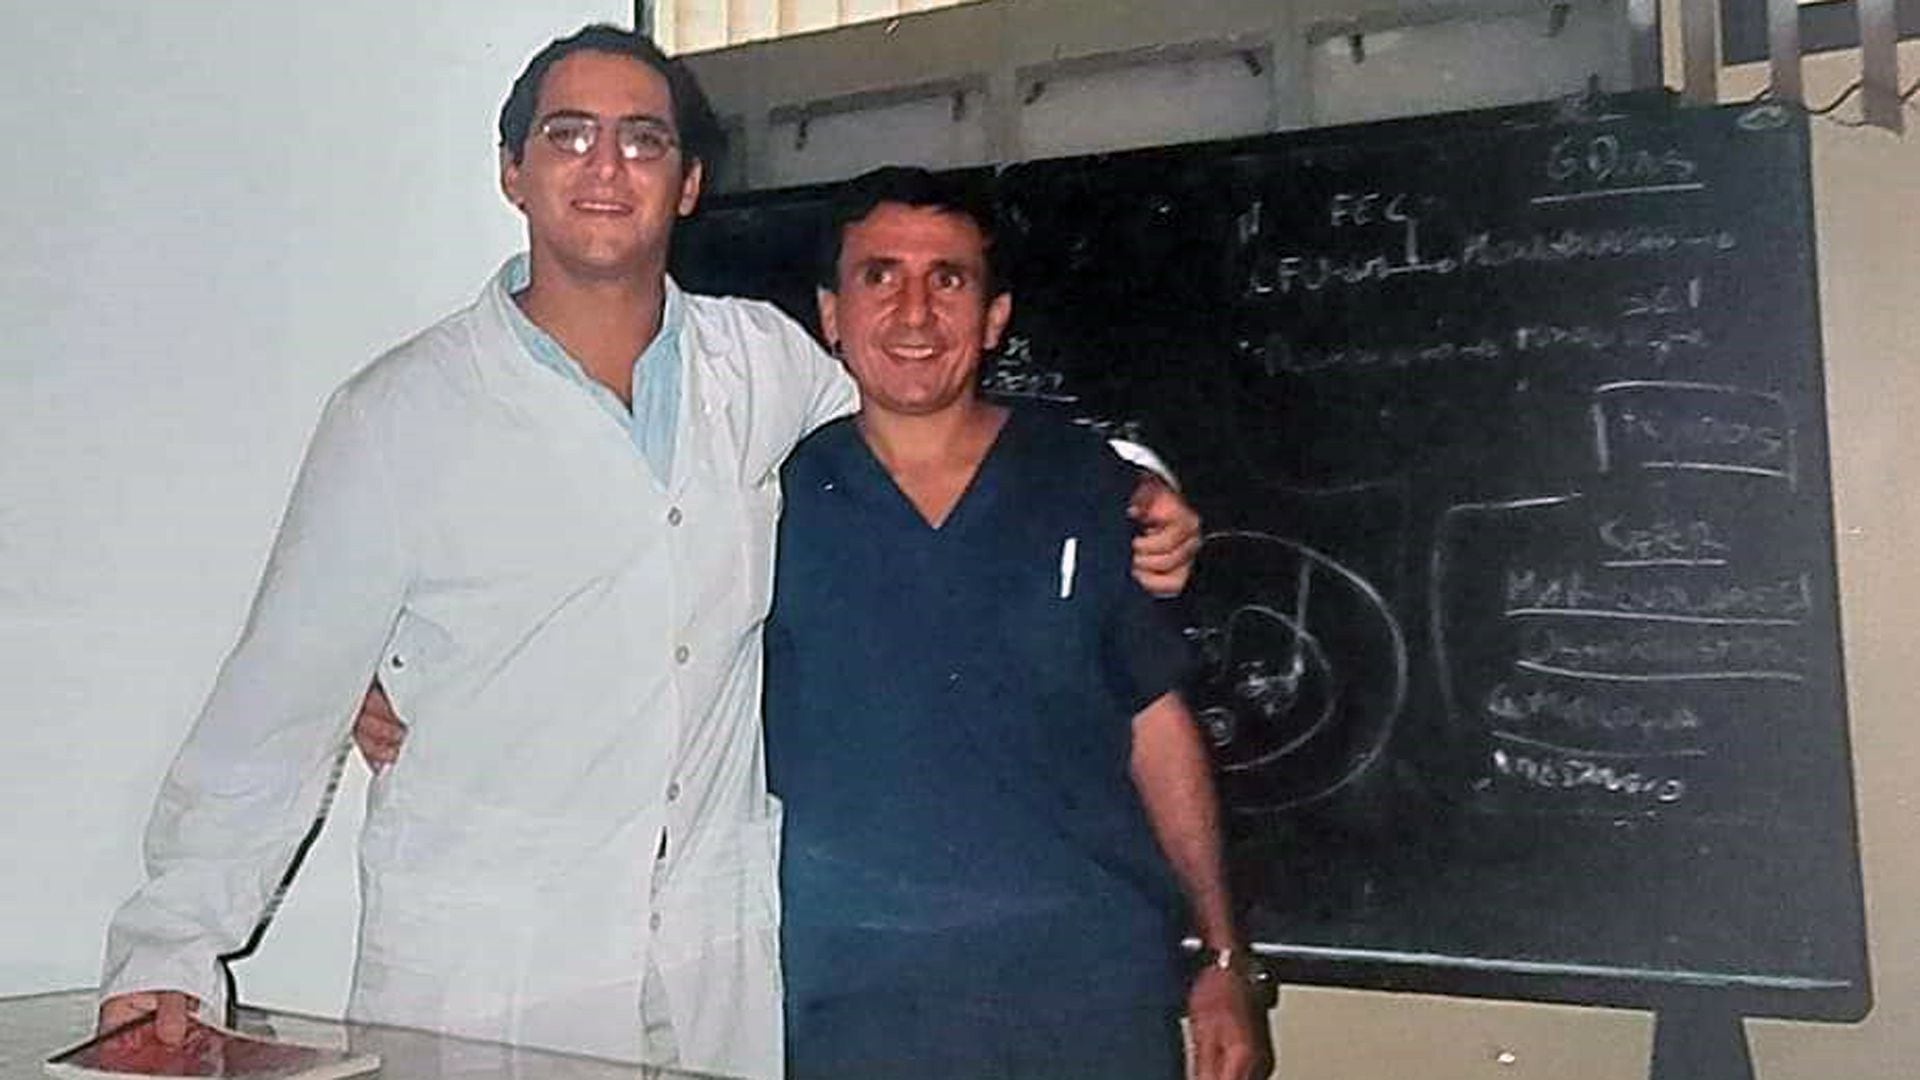 Formó parte del programa "RCP Chacabuco", en el marco de la iniciativa de Chacabuco cardioprotegido, junto al doctor Walter Muñoz